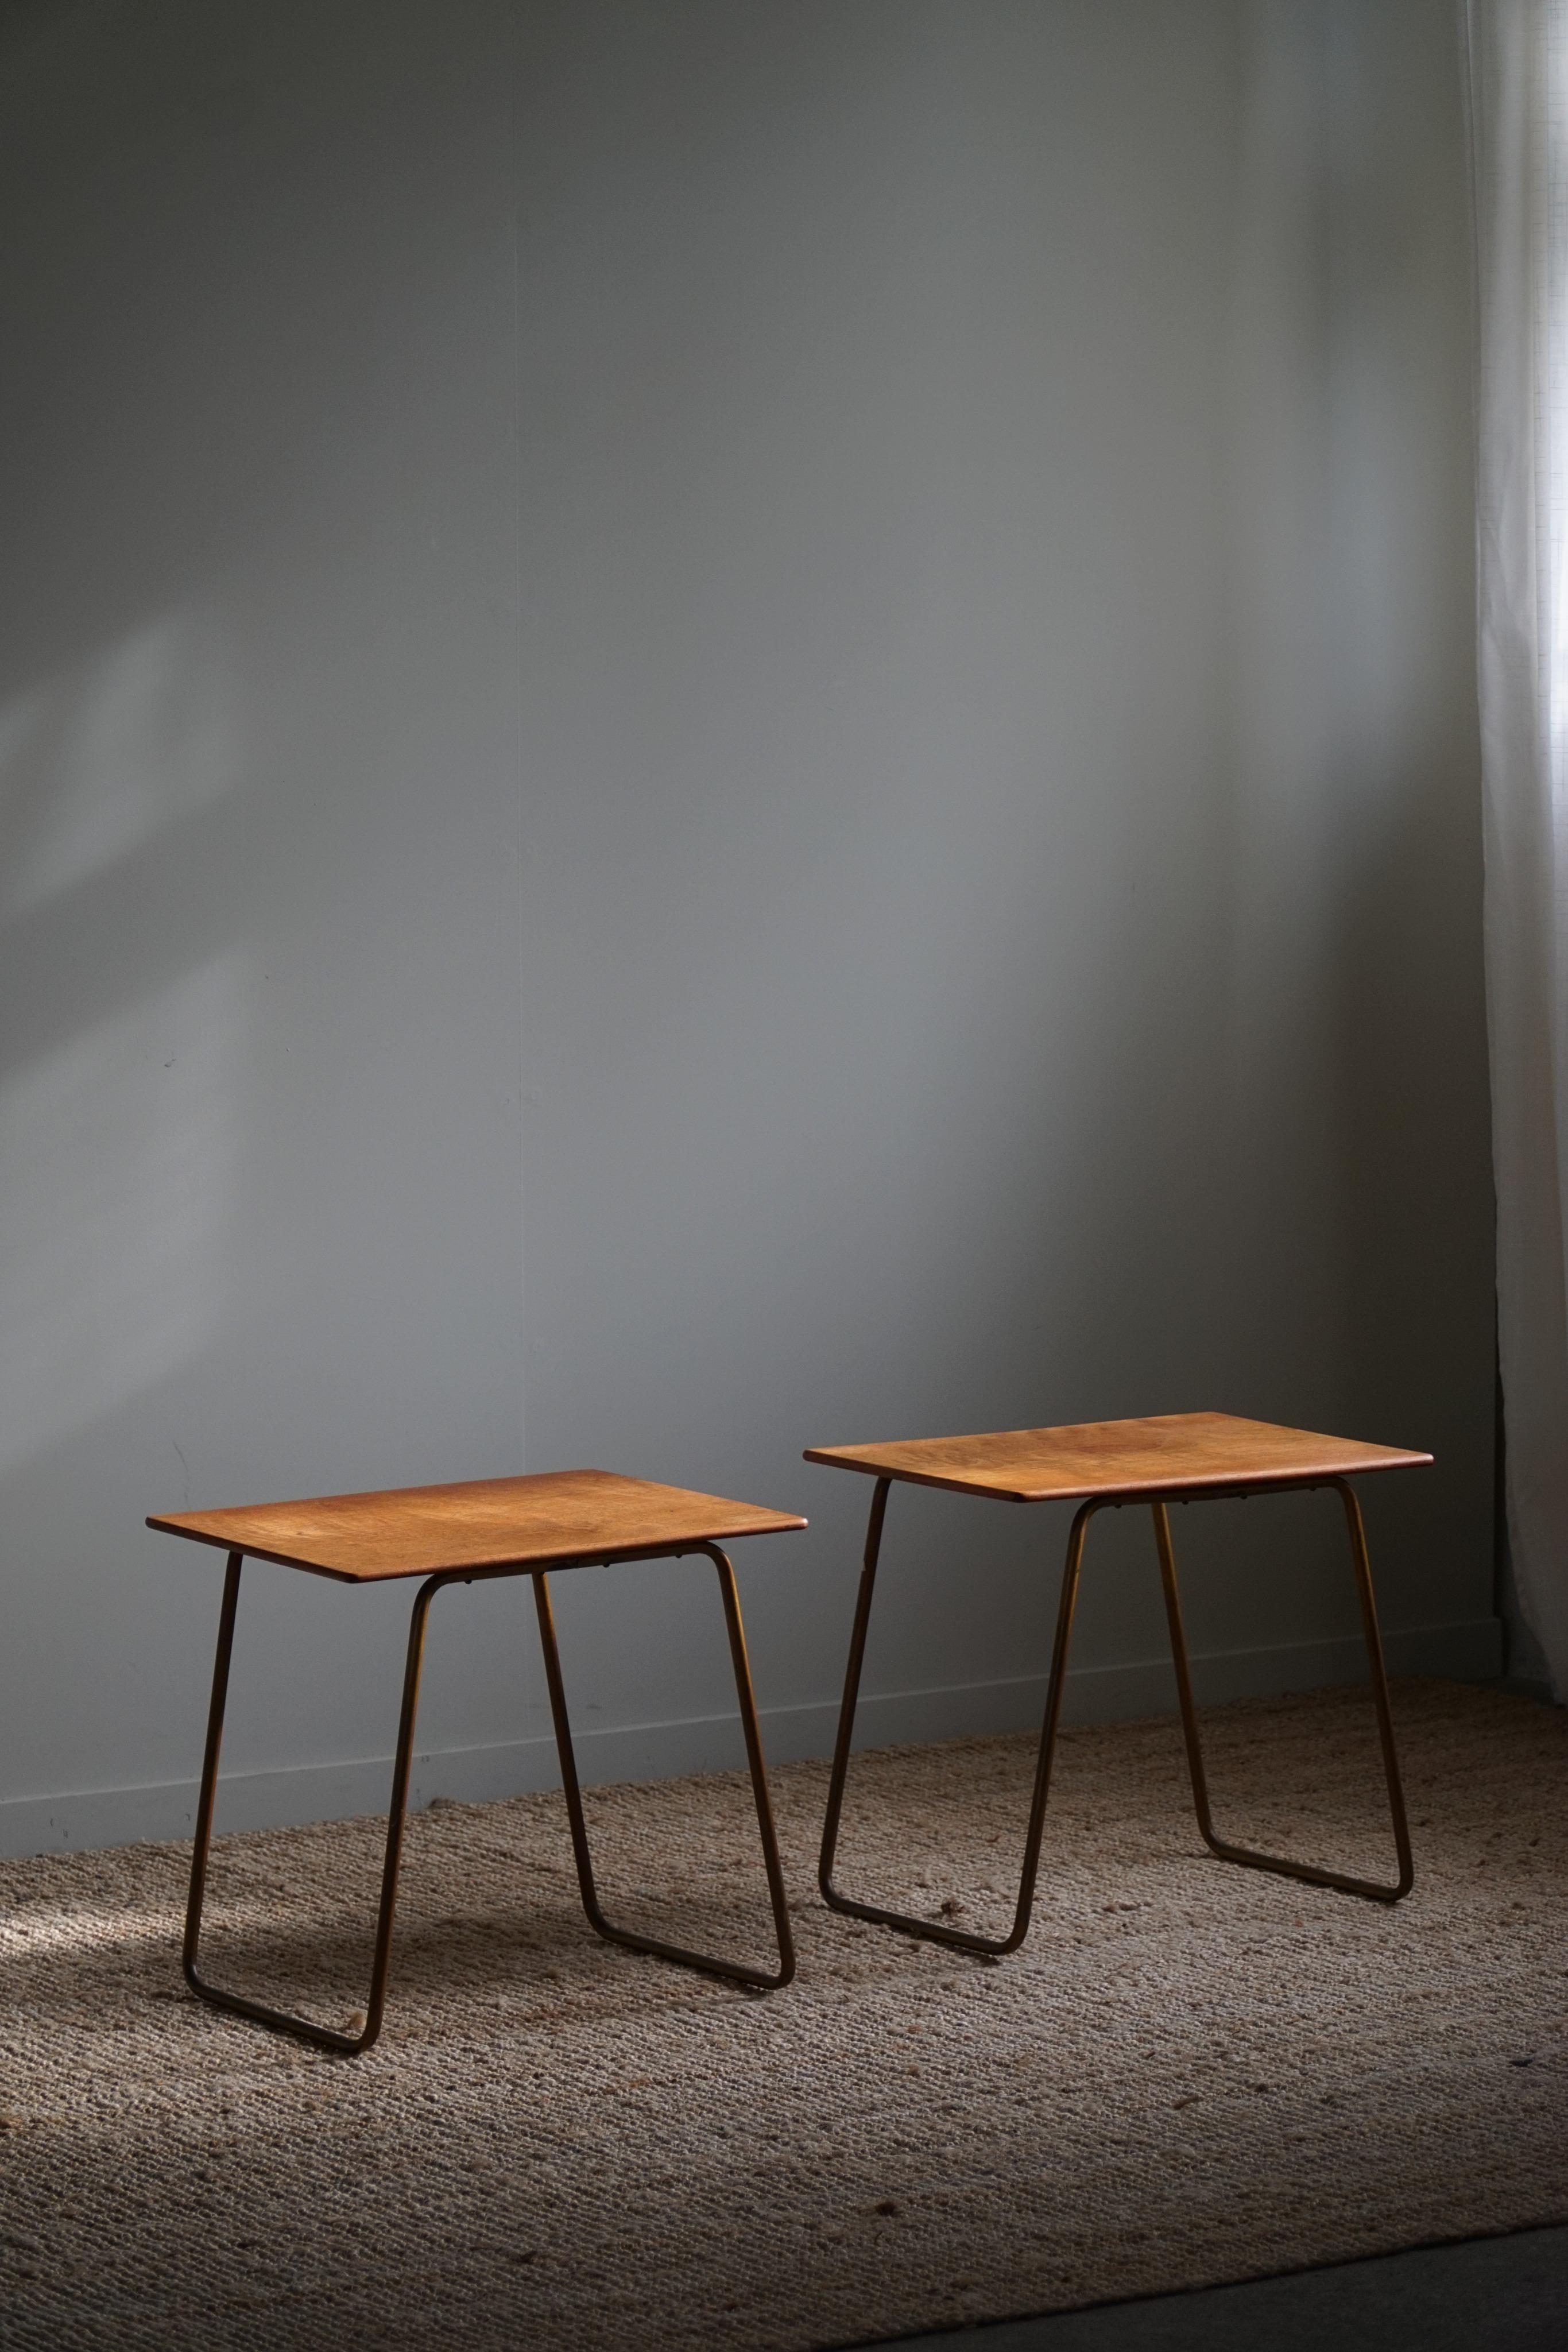 Une paire de tables d'appoint classiques et élégantes en teck avec une base en acier. Fabriqué dans les années 1960 par un ébéniste danois. 

Belle patine et lignes simples qui s'intègrent dans de nombreux styles d'intérieur. Un intérieur moderne,